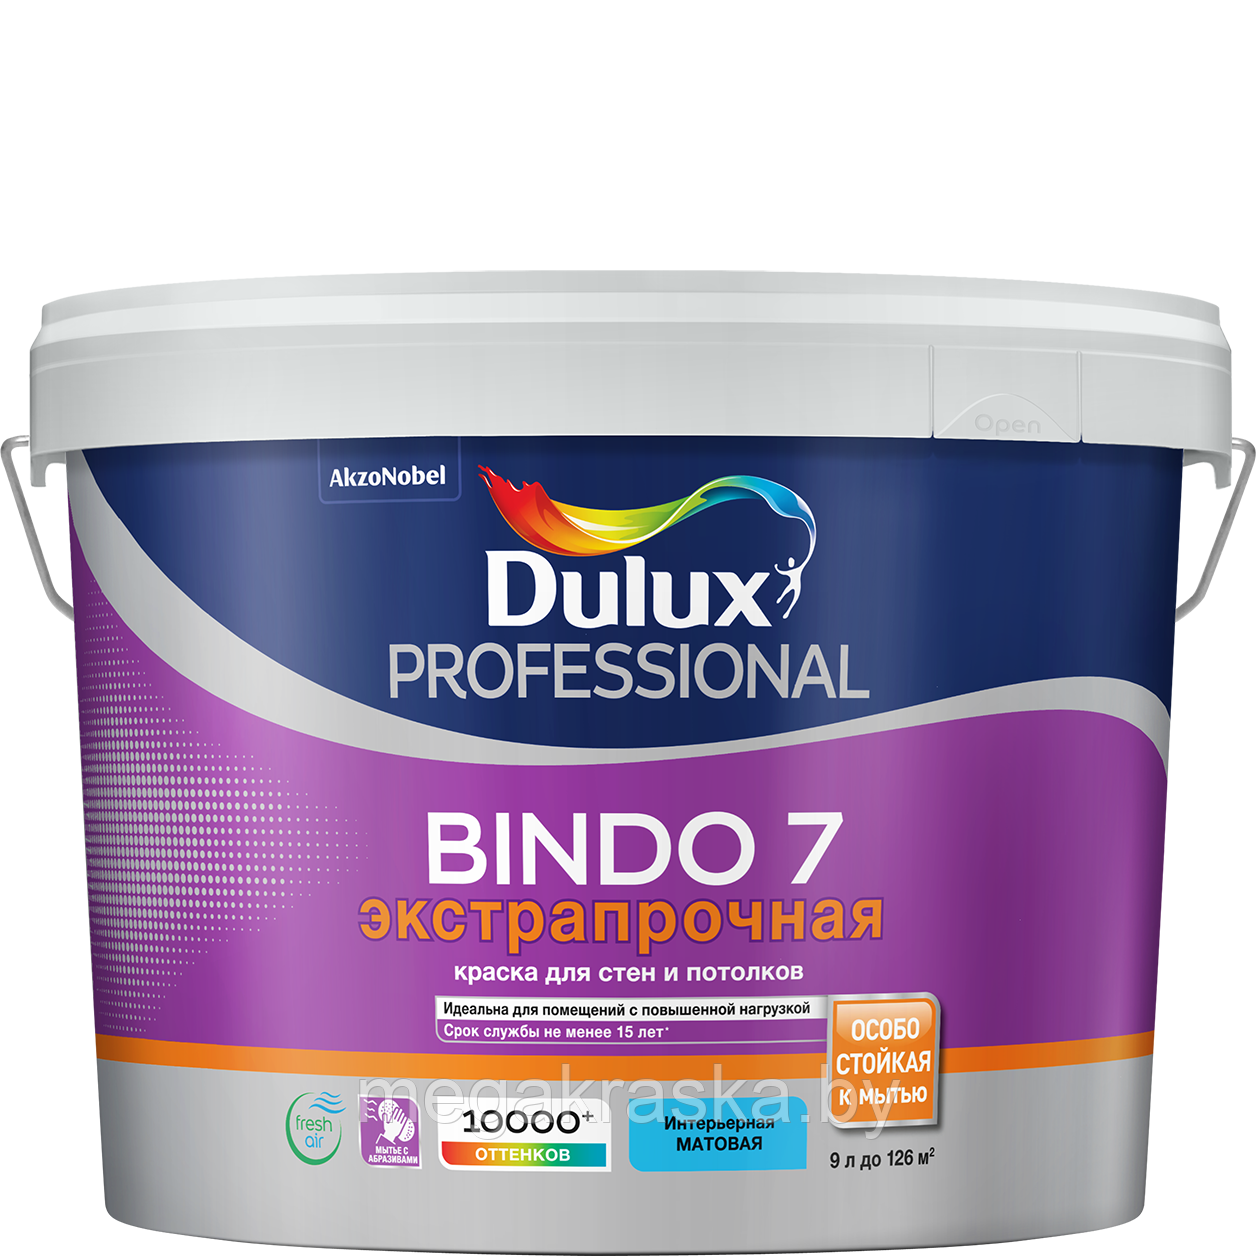 Dulux Bindo 7, латексная краска для стен и потолков. 9л.